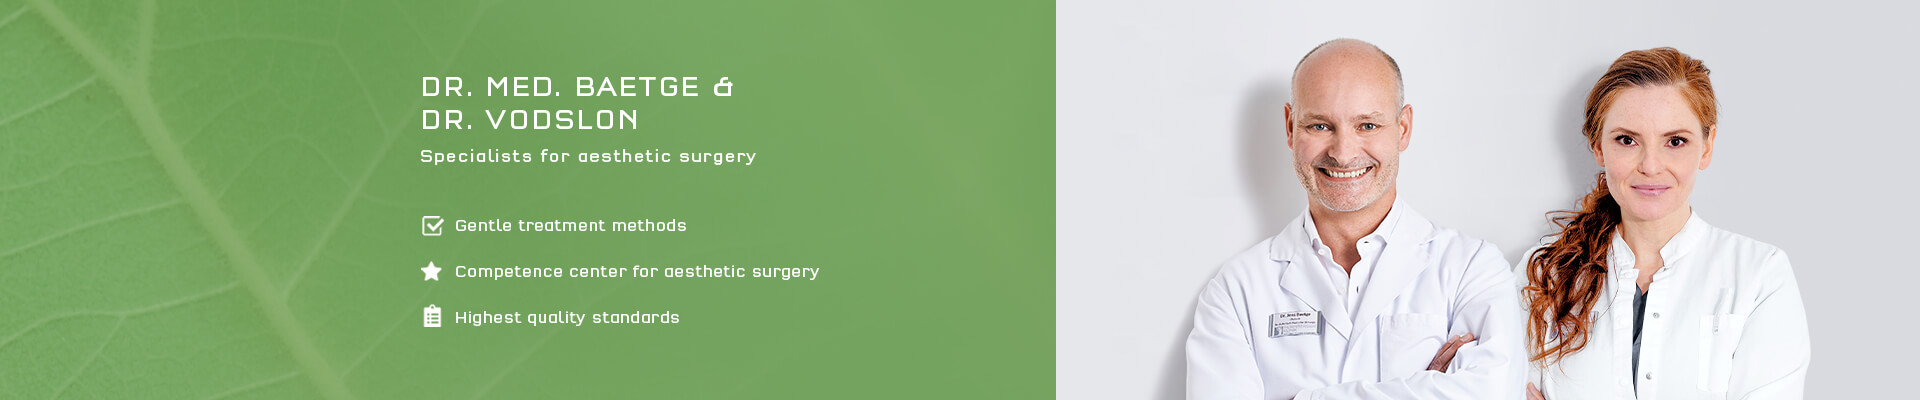 treatments-face-02-nuernberger-klinik-aesthetisch-plastische-chirurgie-d.jpg 